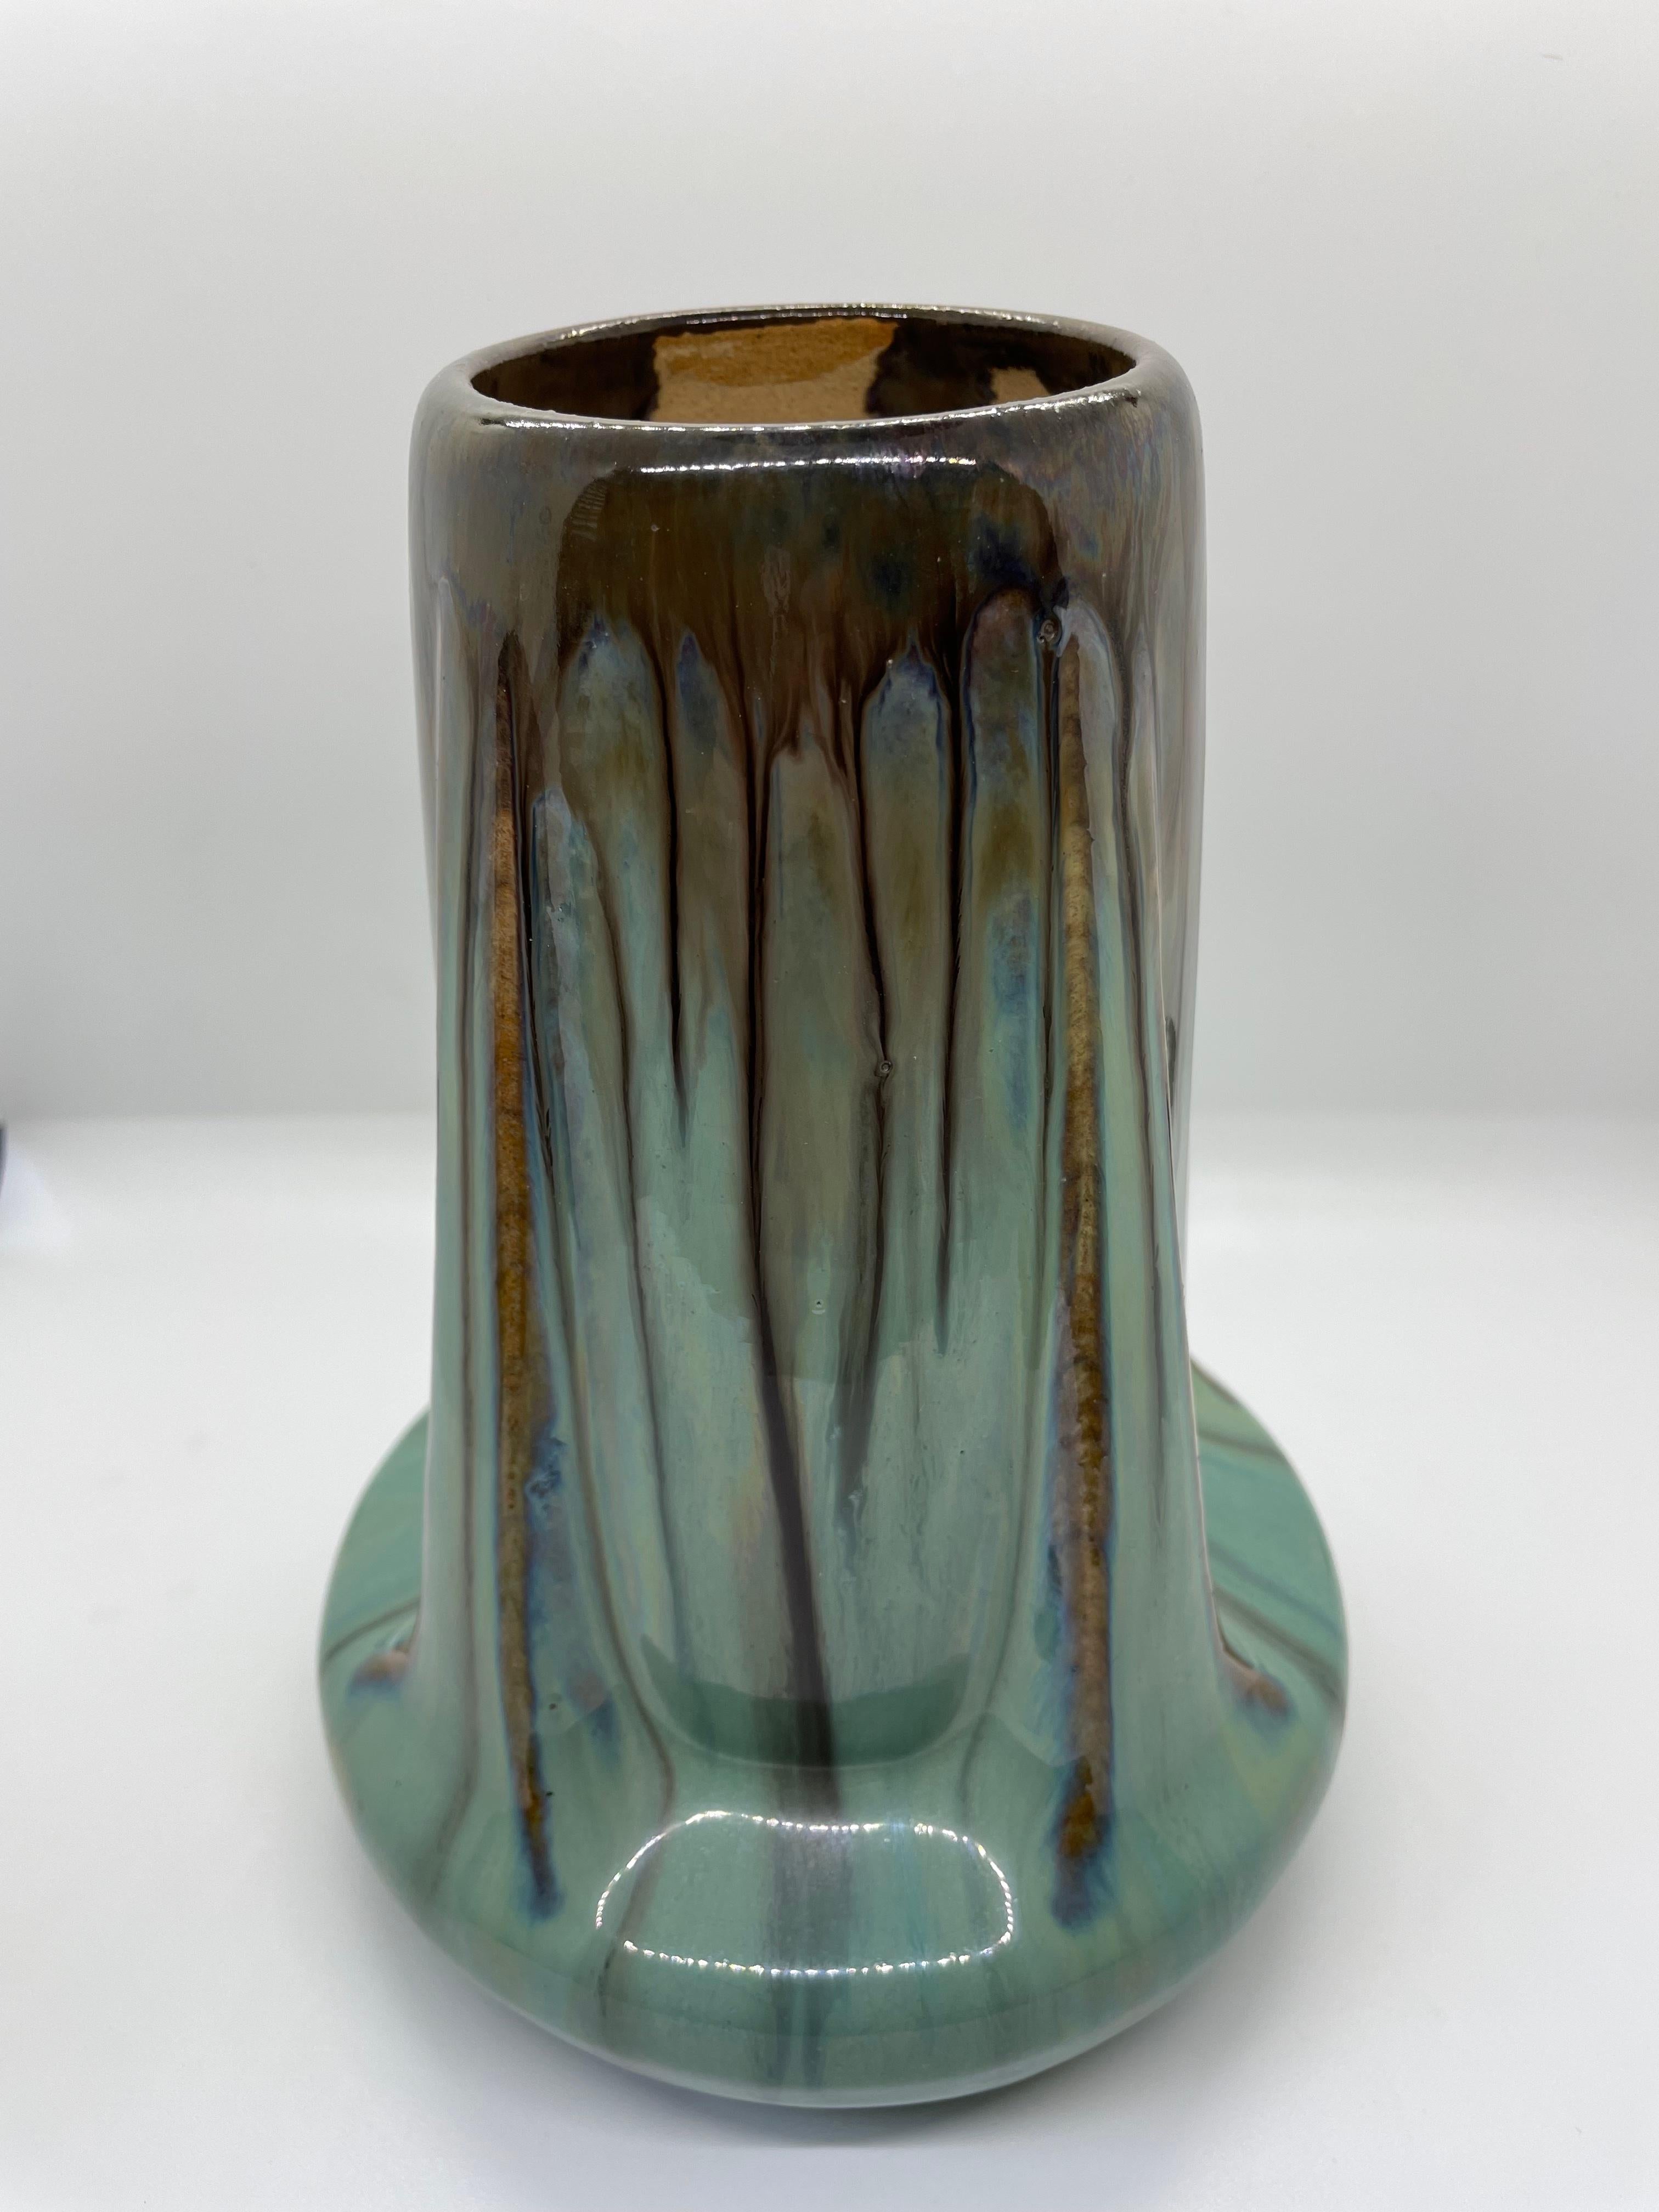 Fulper Buttress Vase in herrlichen Grün- und Brauntönen. Wunderschönes Beispiel amerikanischer Töpferkunst des frühen 20. Jahrhunderts, hergestellt in New Jersey. Ein paar winzige 